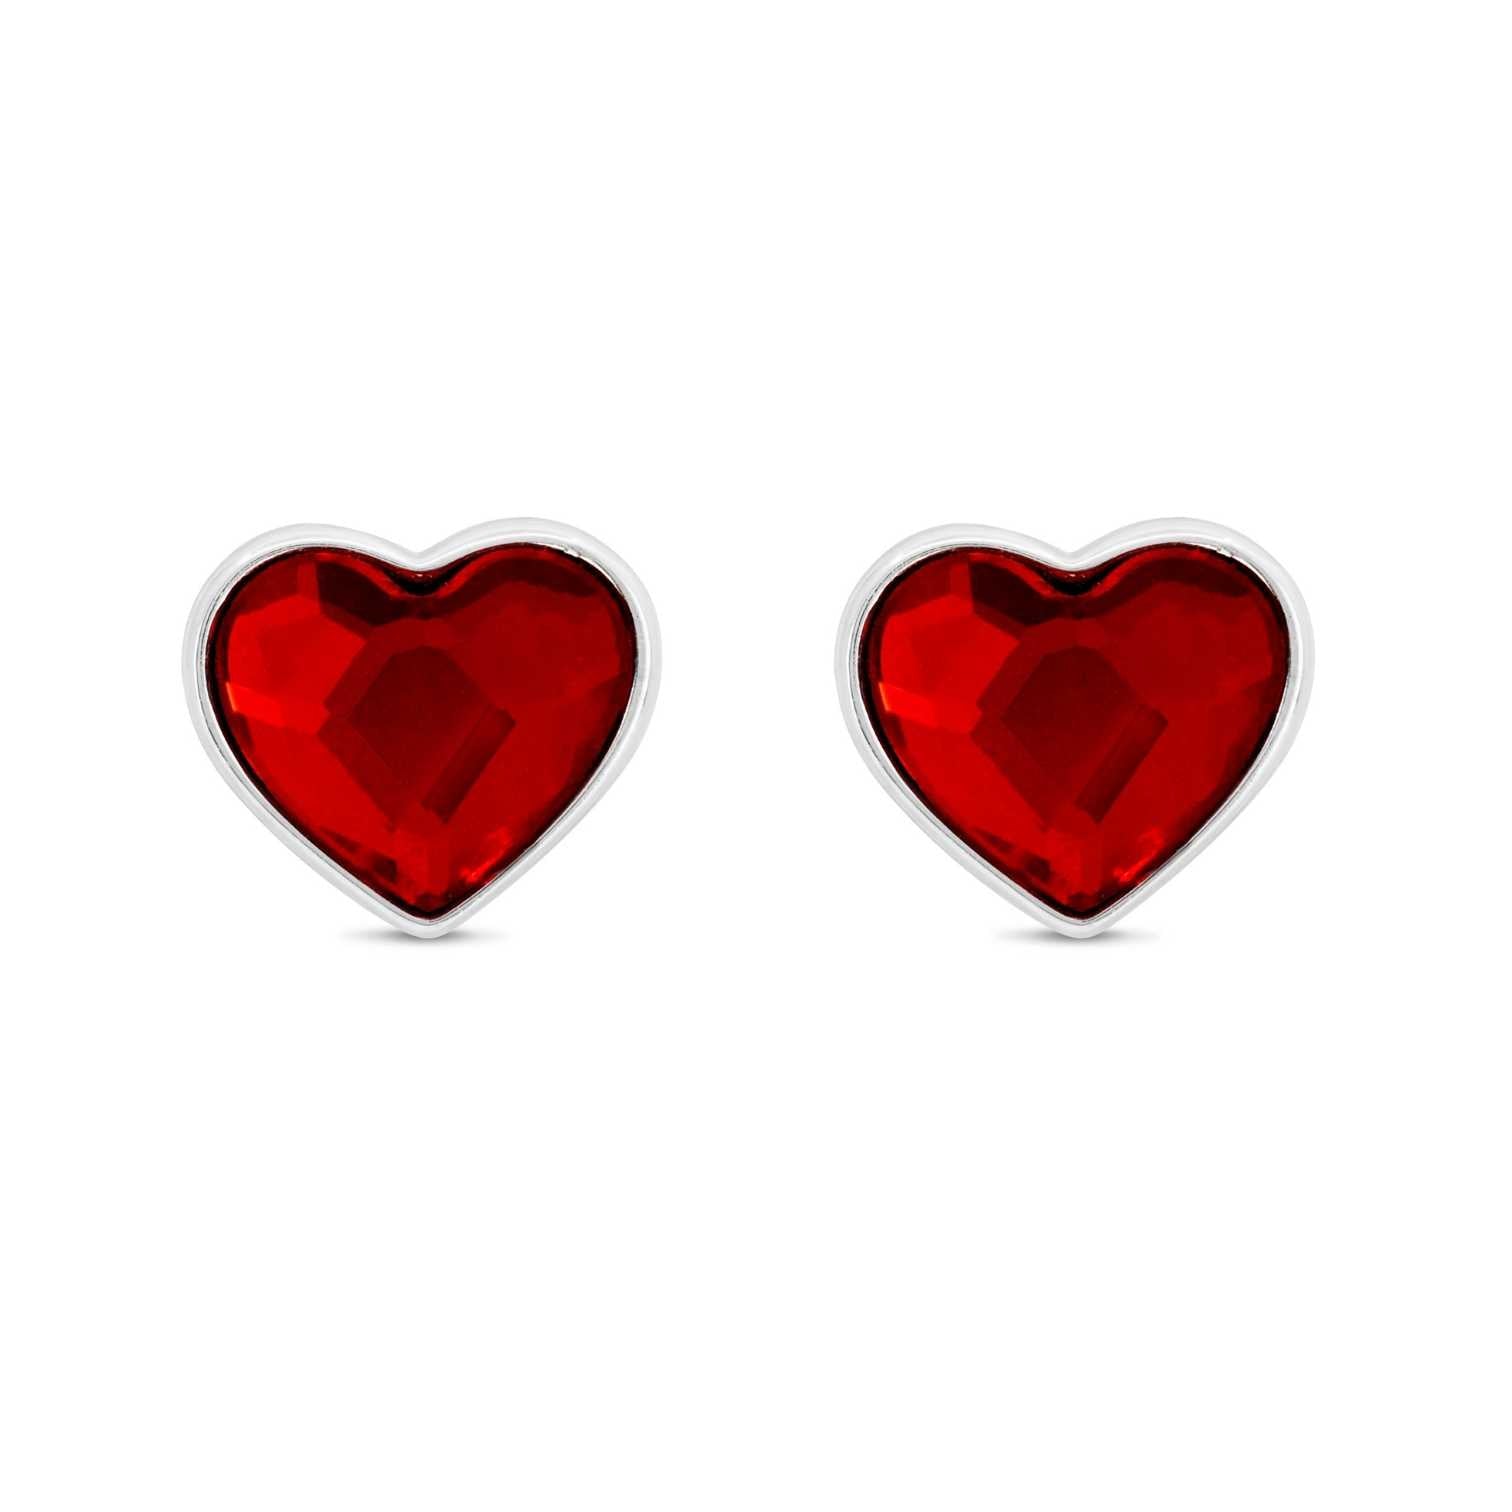 Turquoise heart shaped earrings | Rebekajewelry